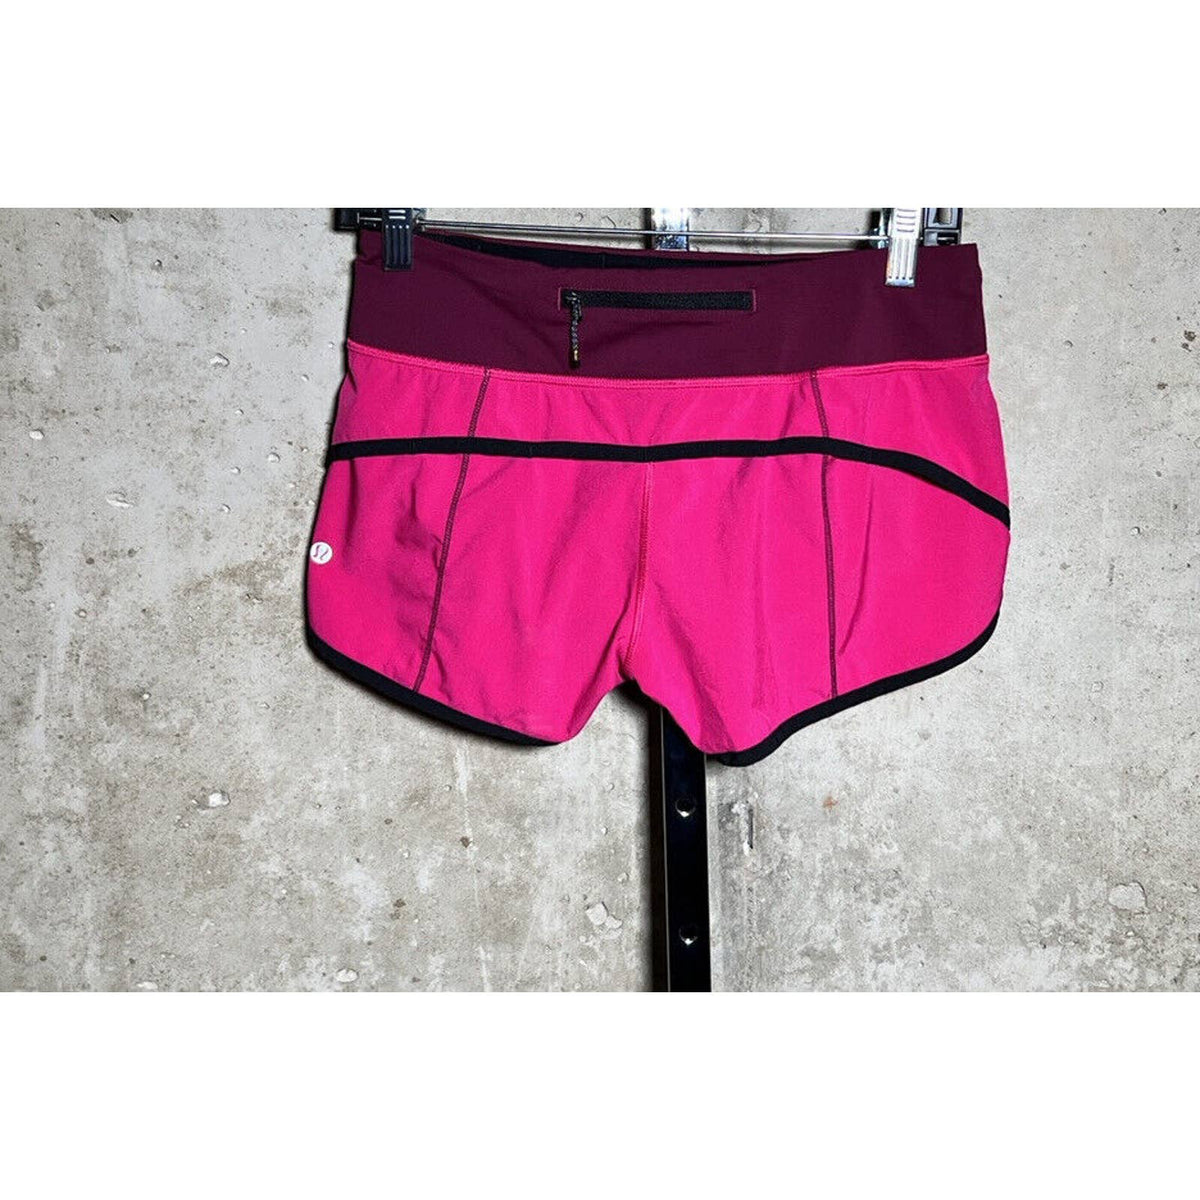 Lululemon Pink Two Toned Speed Shorts Sz.4